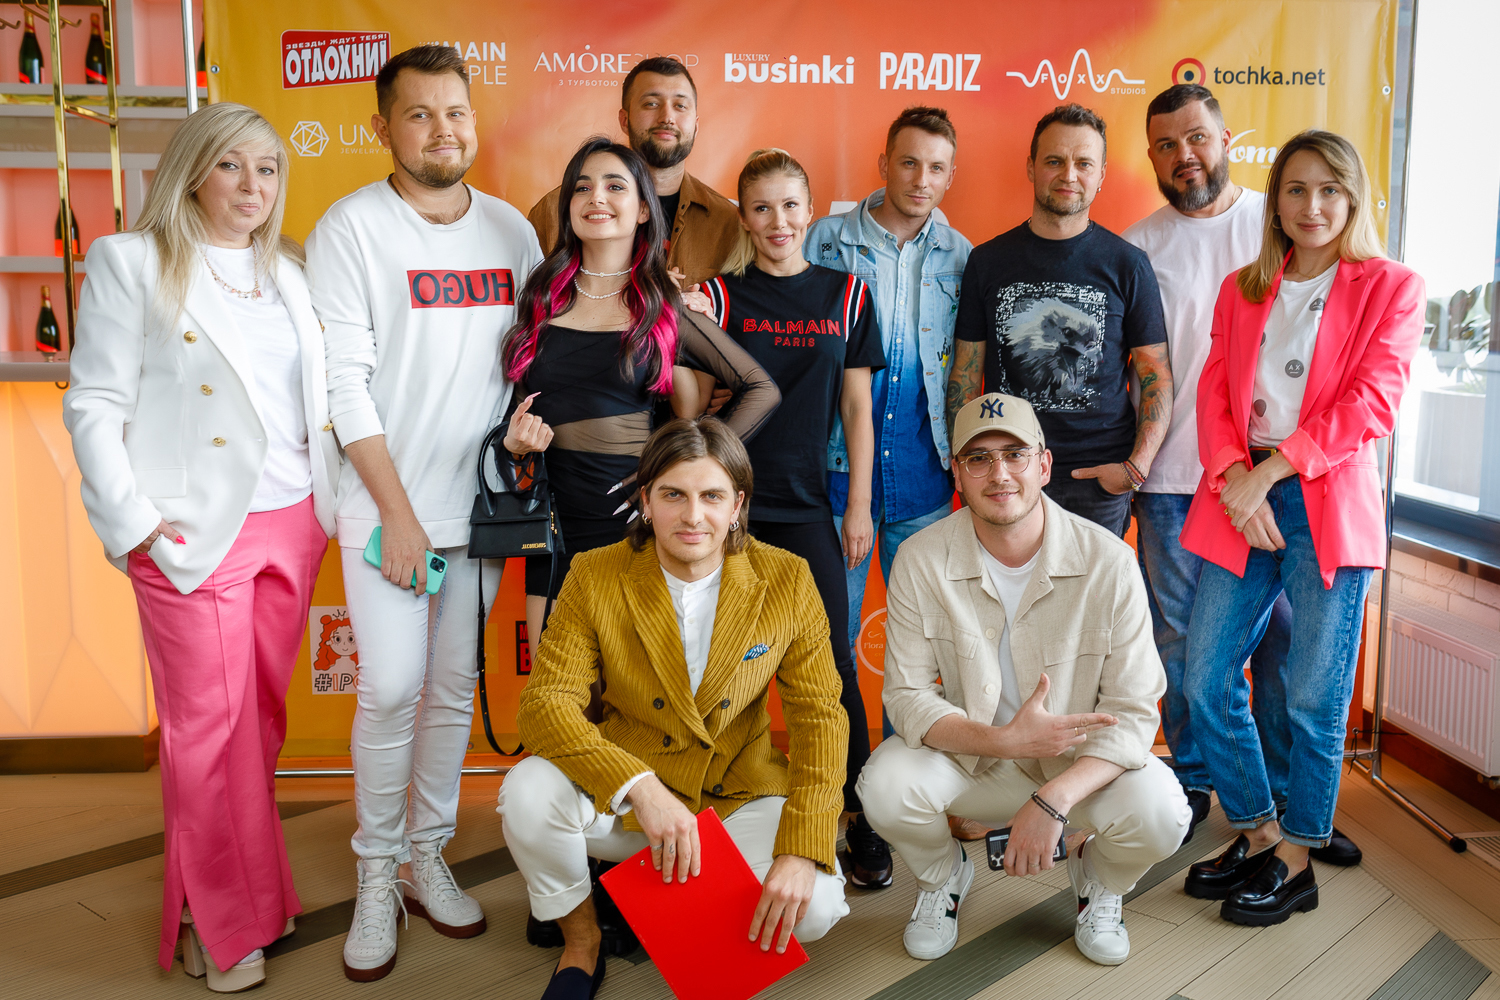 В Киеве прошел четвертый сезон проекта Star Holiday Fest